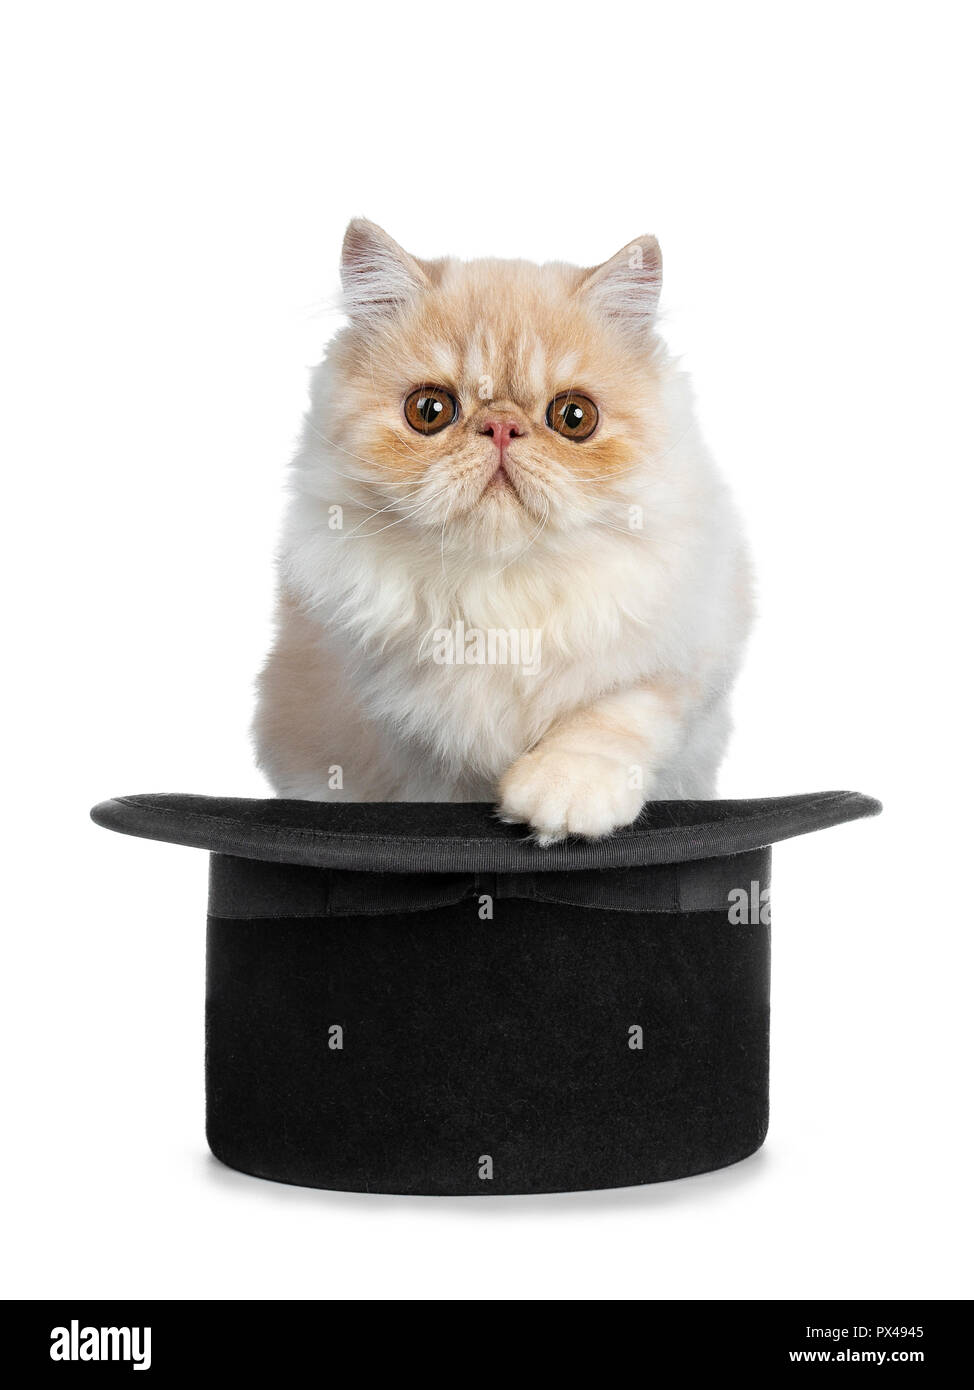 Crème de fumer chat Persan chaton assis en noir et un chapeau de magicien sur le bord de la patte, à tout droit à l'appareil photo avec de grands yeux marron ronde. Isolé Banque D'Images